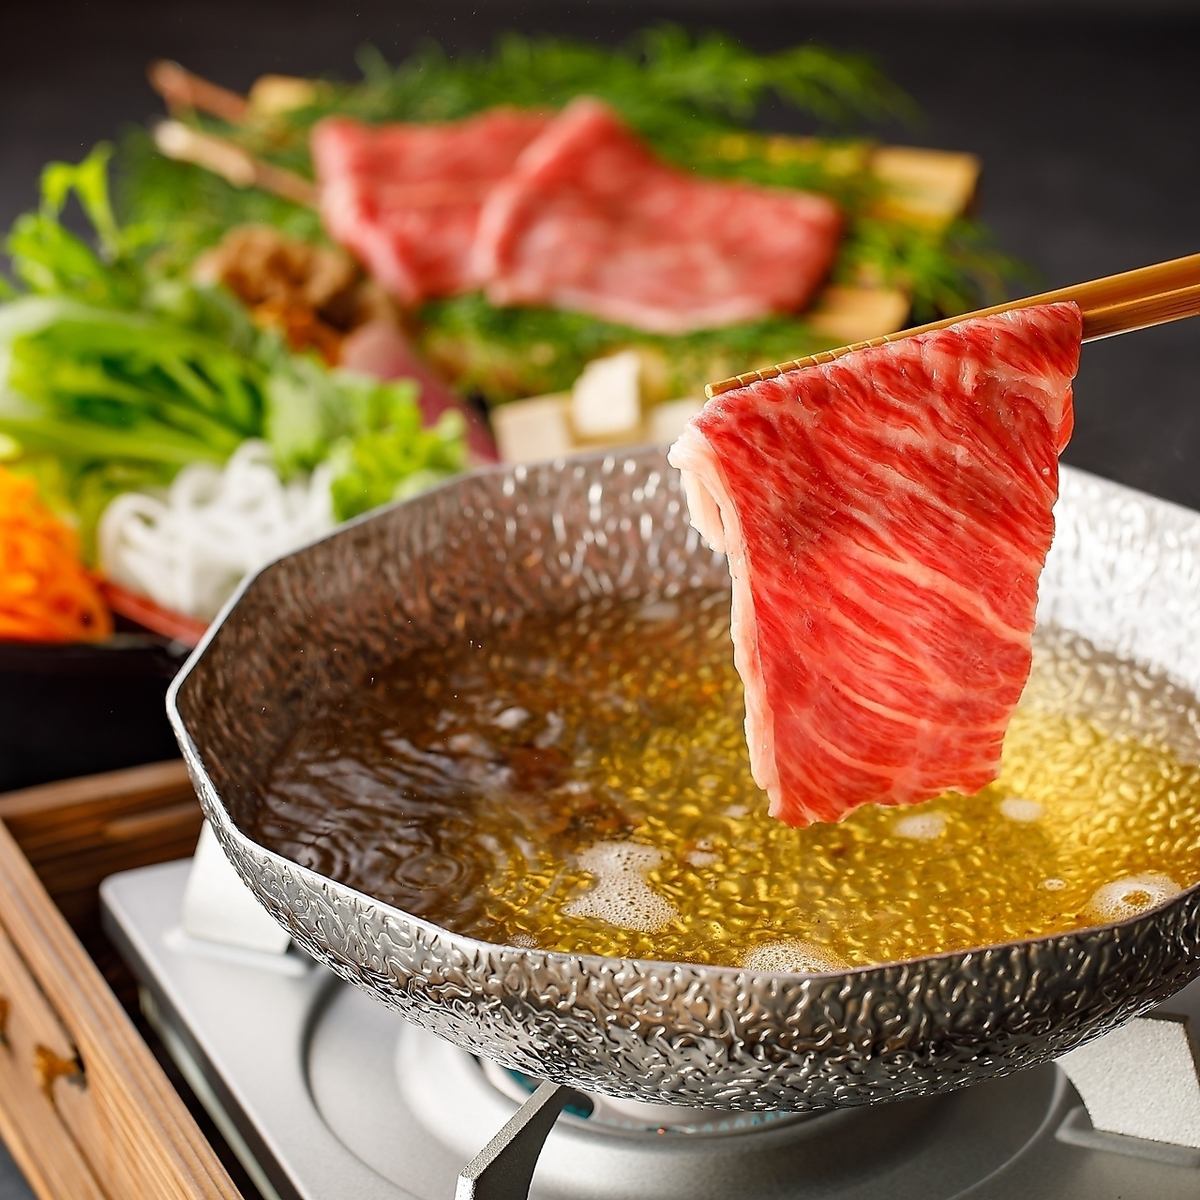 位於大初天神的餐廳提供價格合理的黑毛和牛涮鍋和肉類壽司單點菜餚。